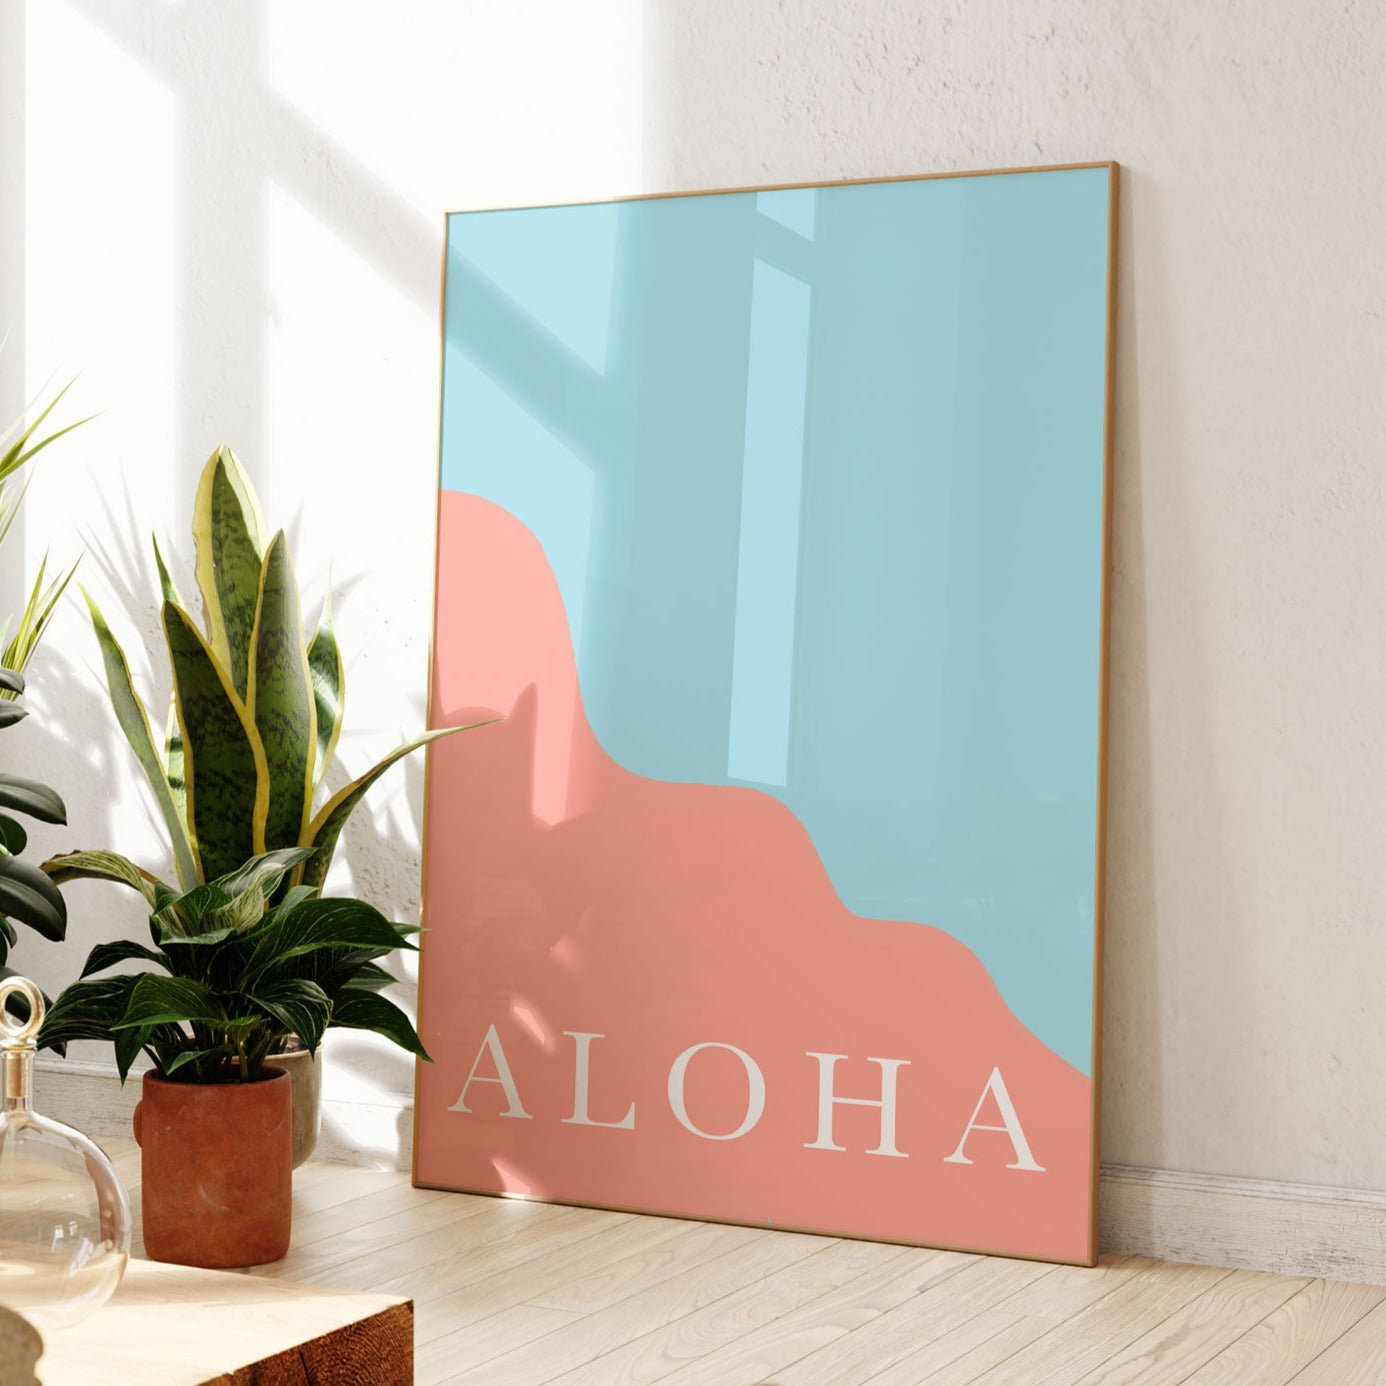 Aloha Abstract Wall Poster